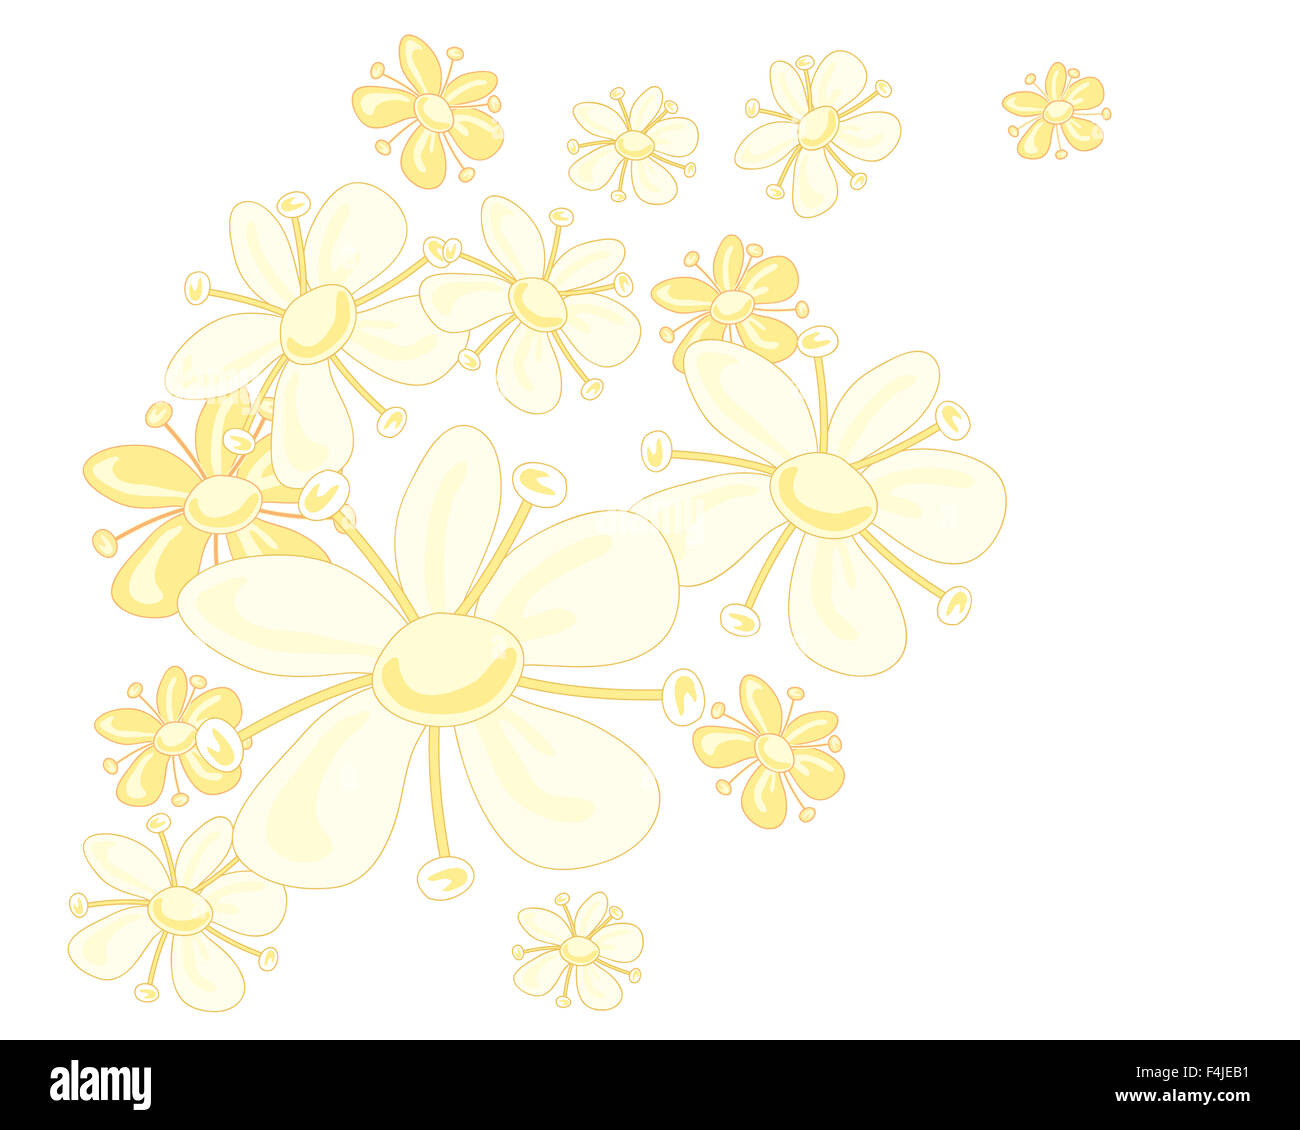 Une illustration d'une conception de sureau stylisé en jaune pâle de couleurs sur un fond blanc Banque D'Images